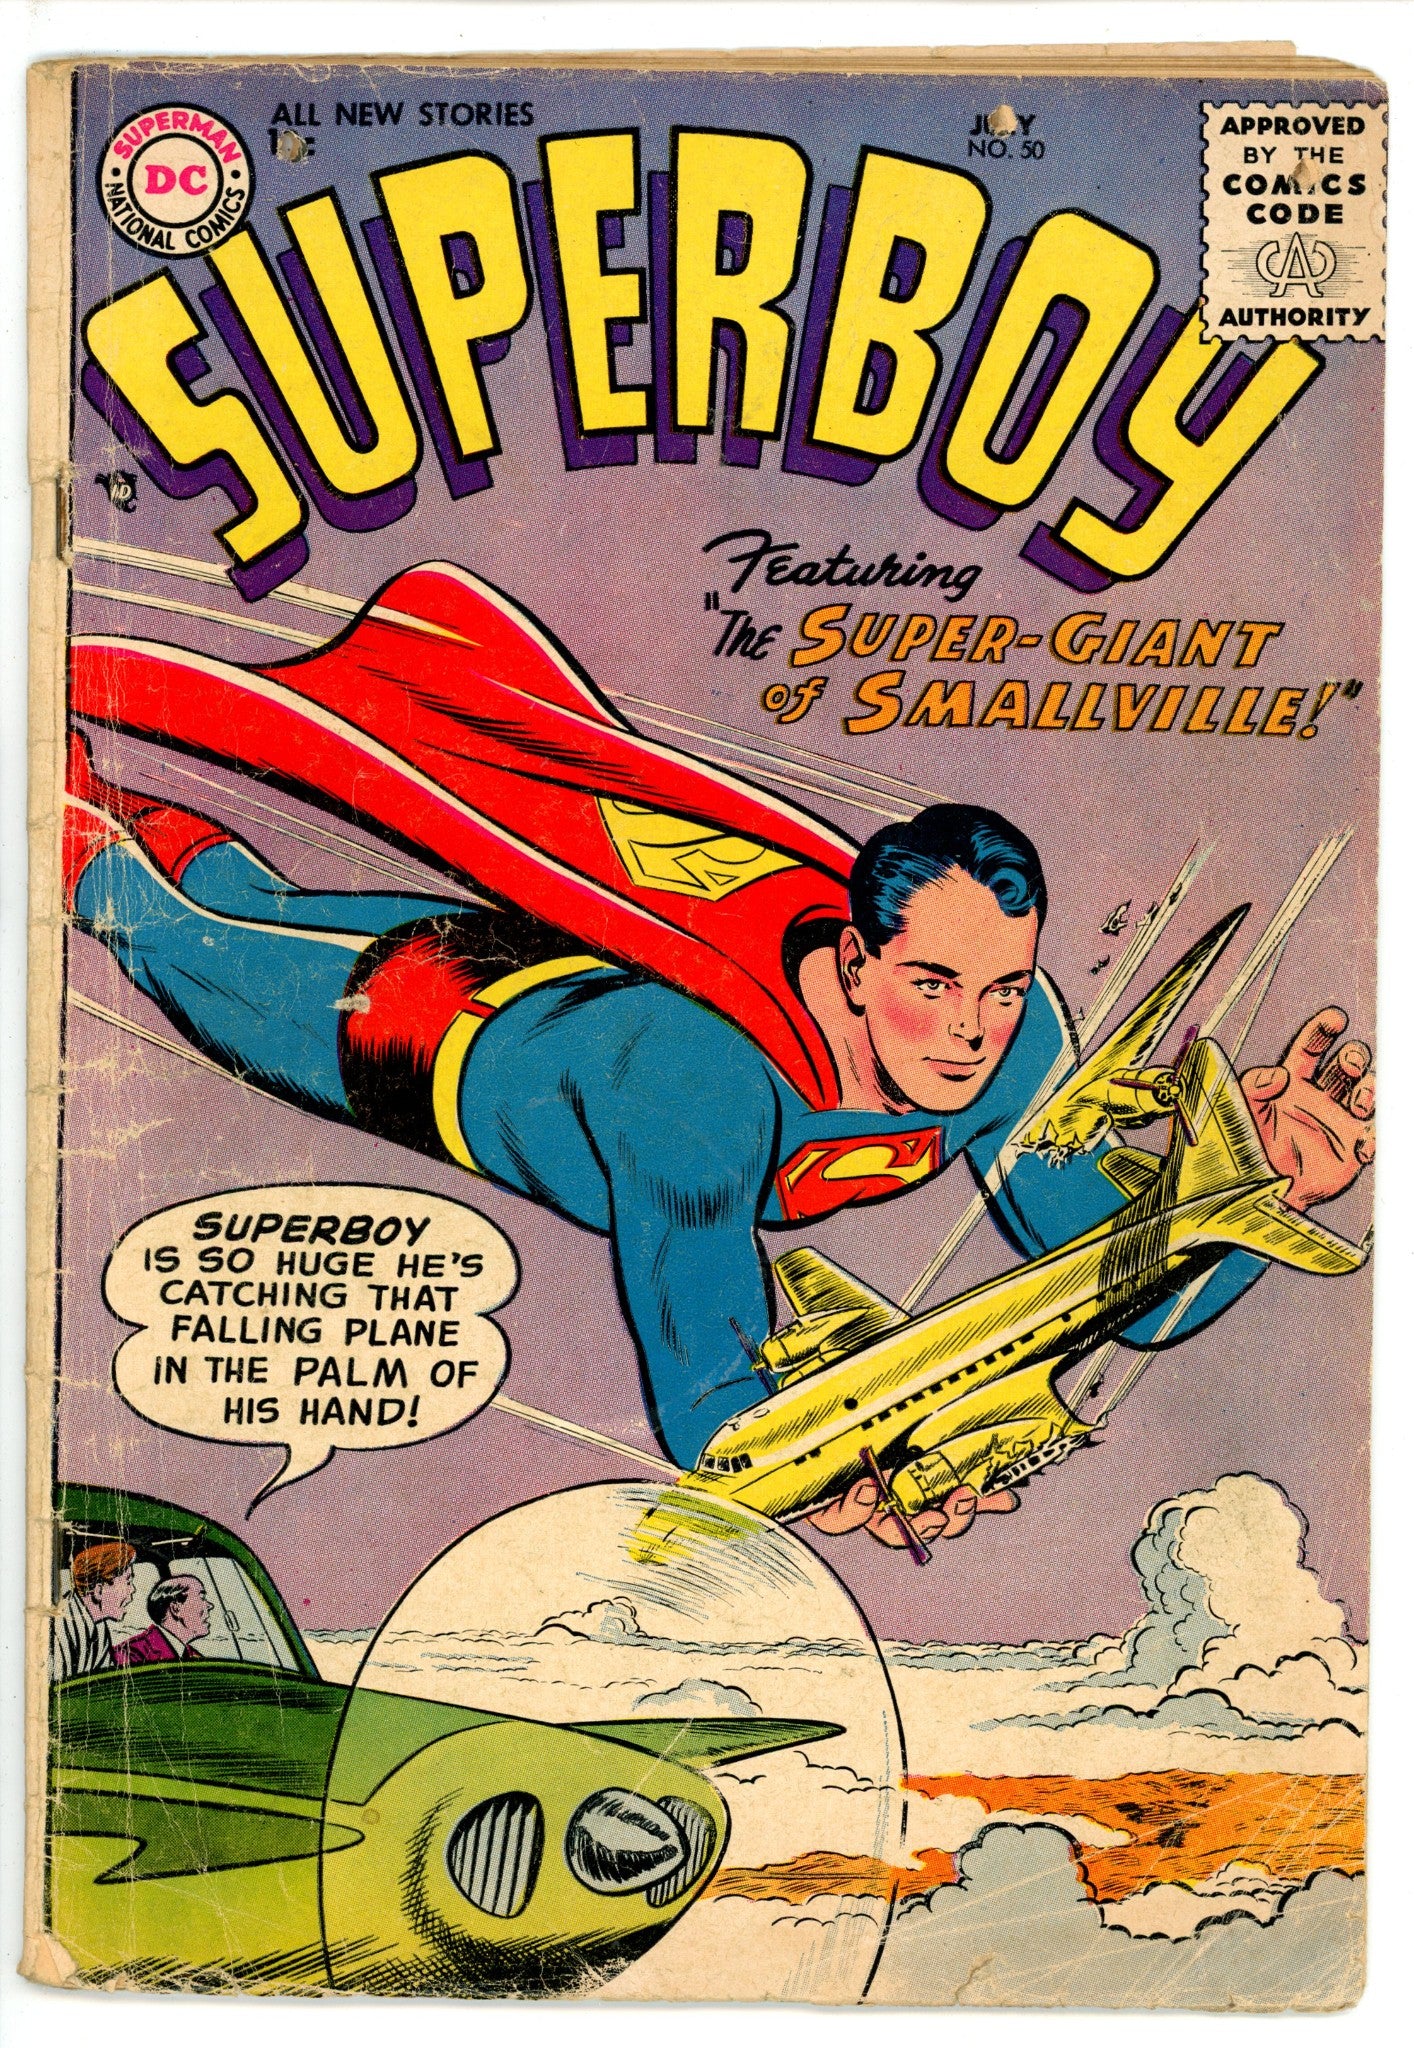 Superboy Vol 1 50 FR